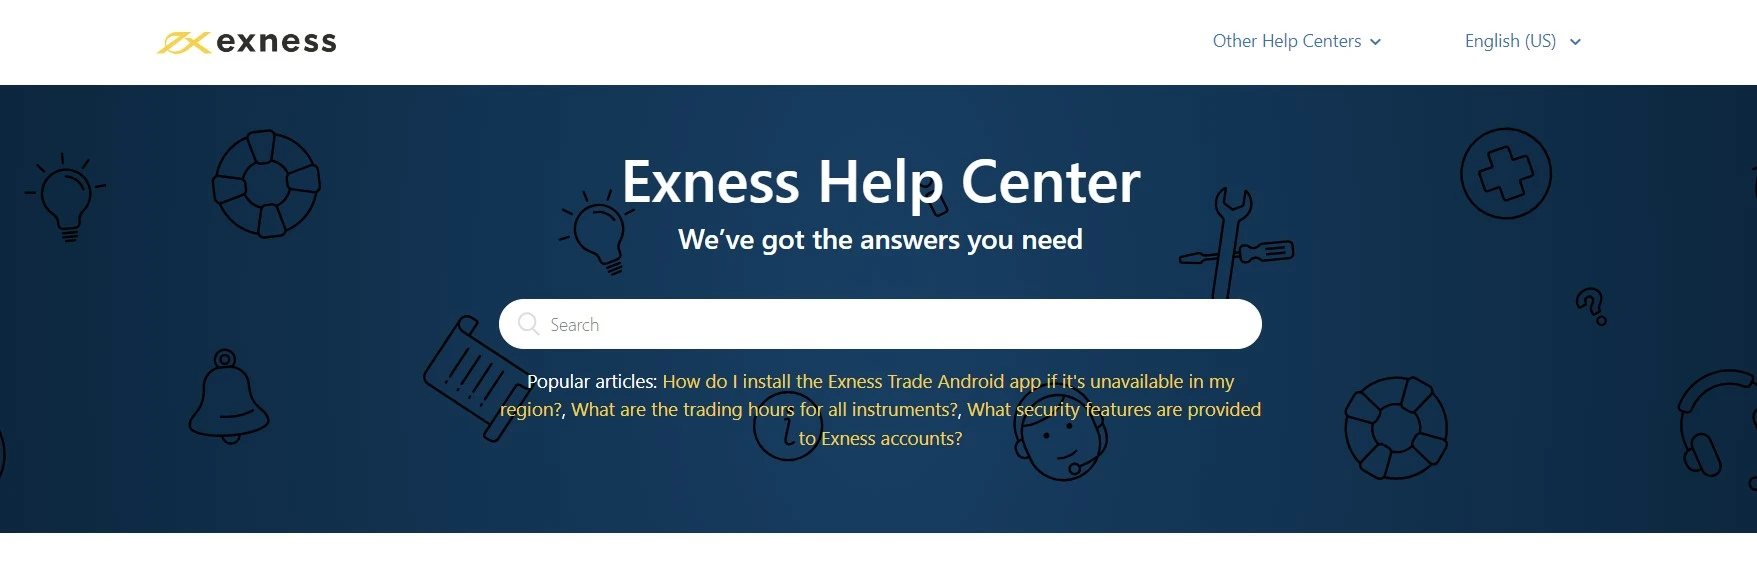 Exness Help Center